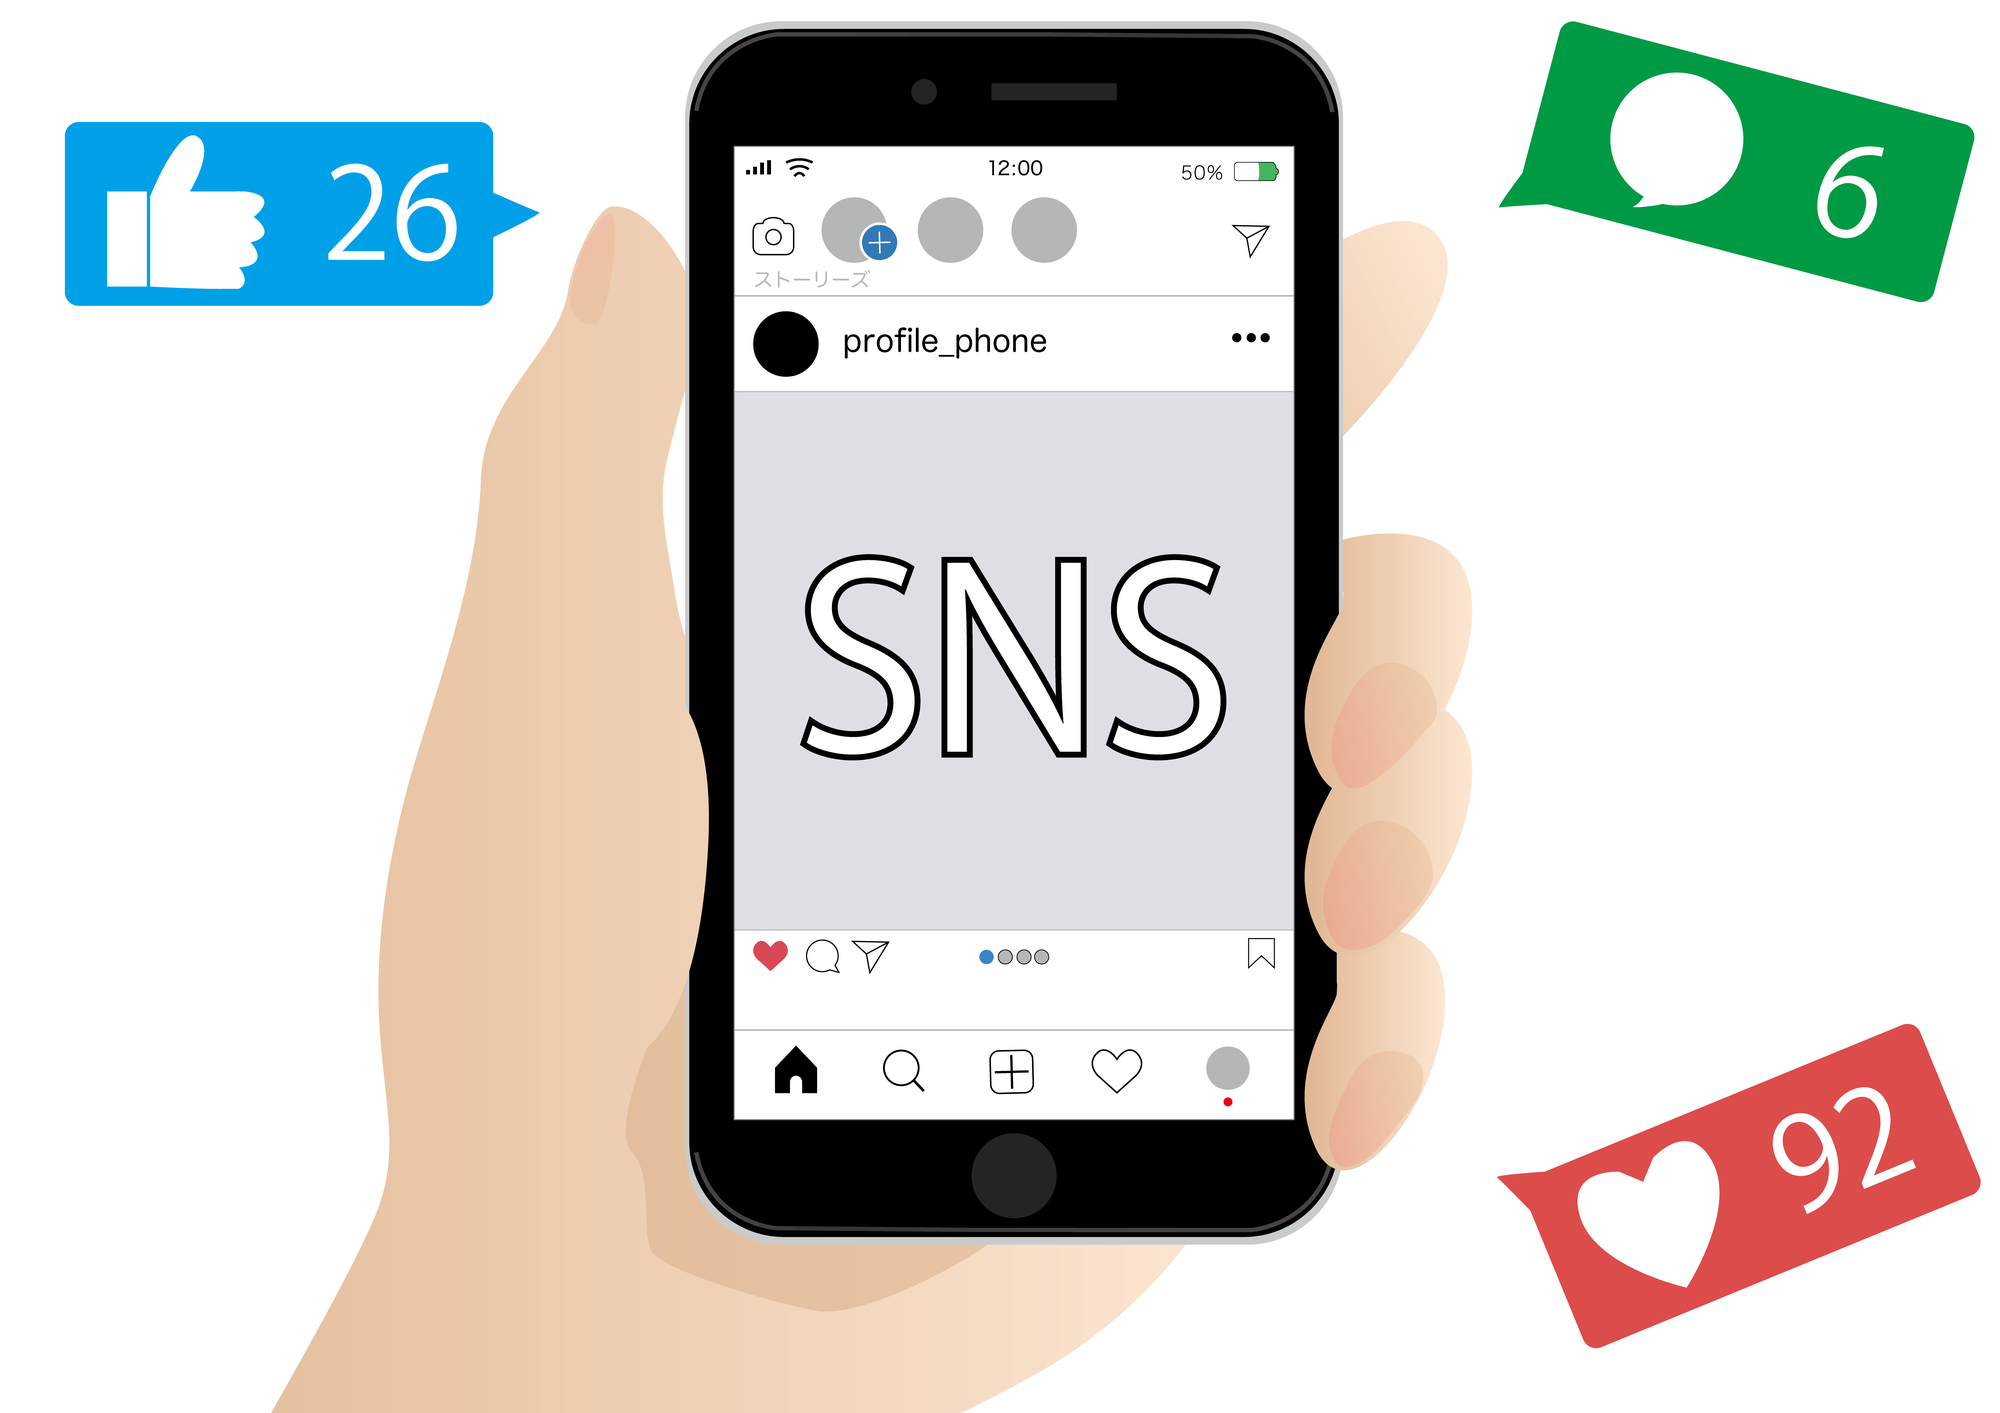 SNSが表示されているスマートフォンを持つ手を、グッドボタンやコメント、ハートマークが囲っている。